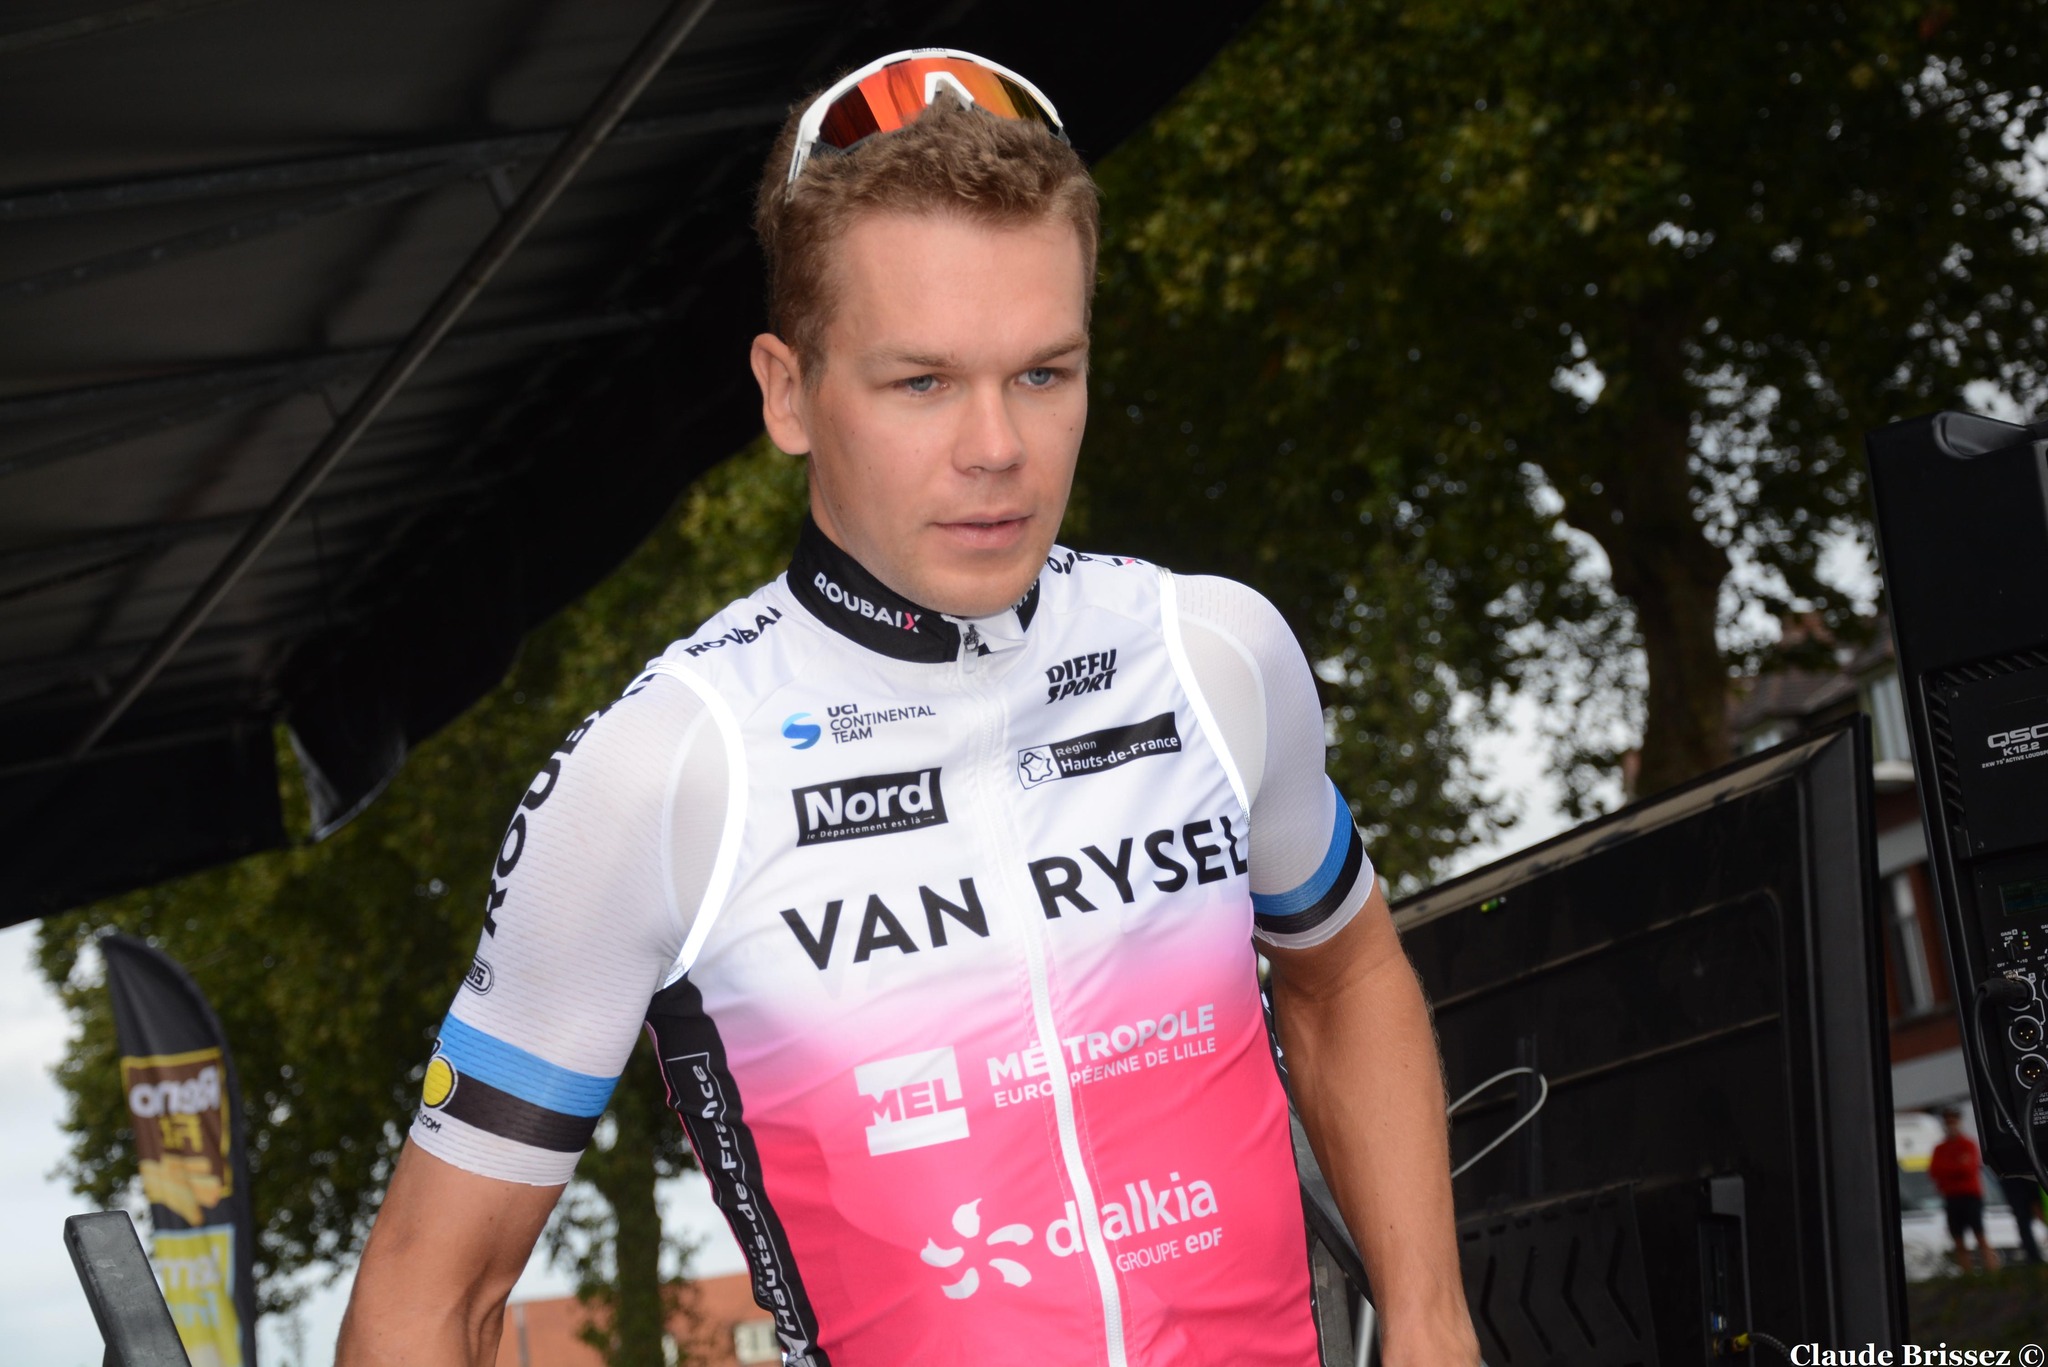 Classement de la 1ère étape du Tour of Estonia, remportée par Norman Vahtra